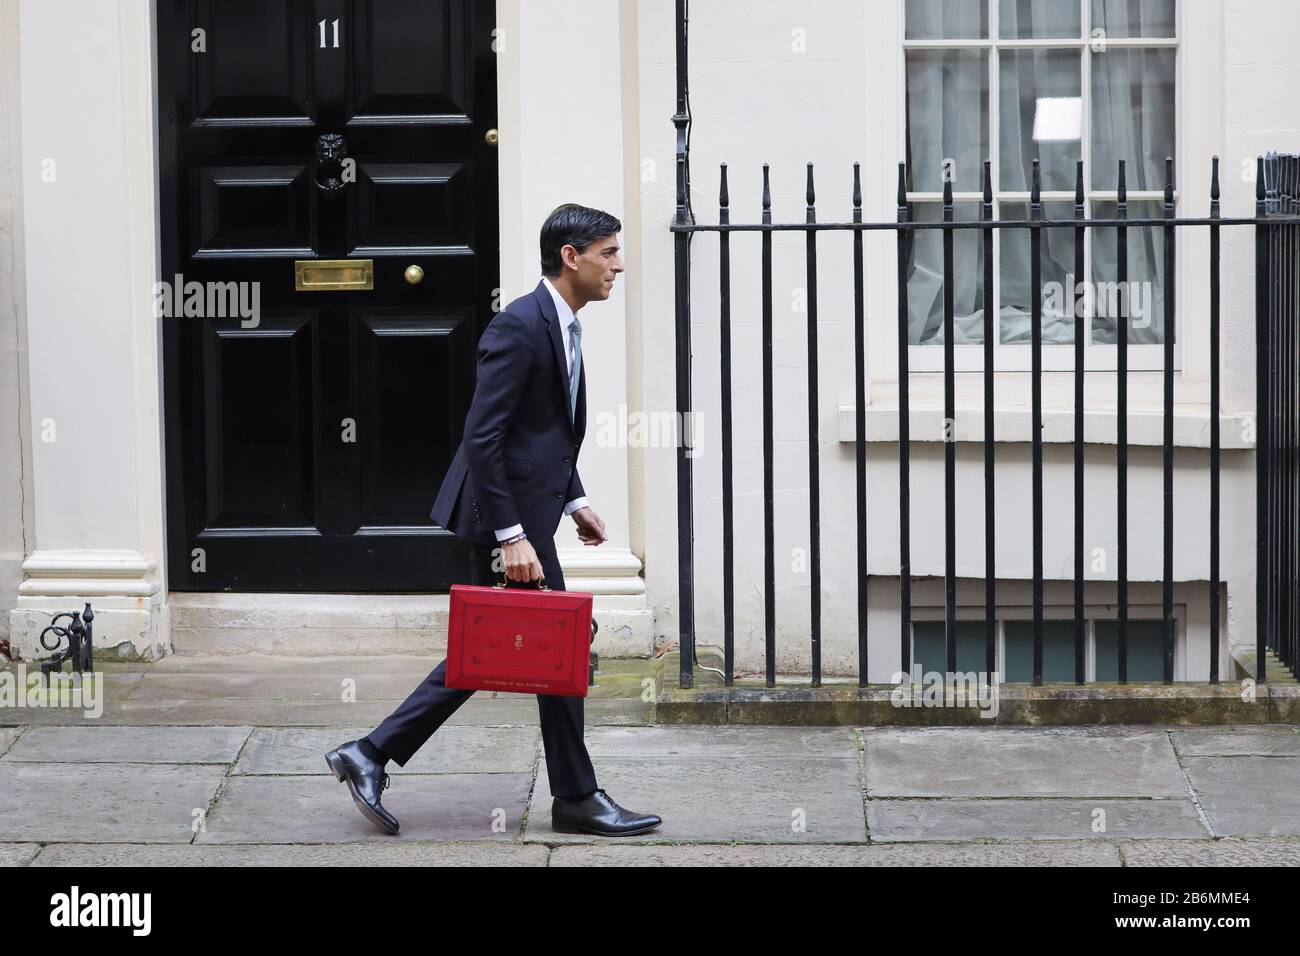 Londres, Londres, Royaume-Uni. 11 mars 2020. Rishi Sunak, chancelier de l'Échiquier britannique, quitte le 11 Downing Street pour remettre son budget au Parlement, à Londres, en Grande-Bretagne, le 11 mars 2020. Crédit: Tim Irlande/Xinhua/Alay Live News Banque D'Images